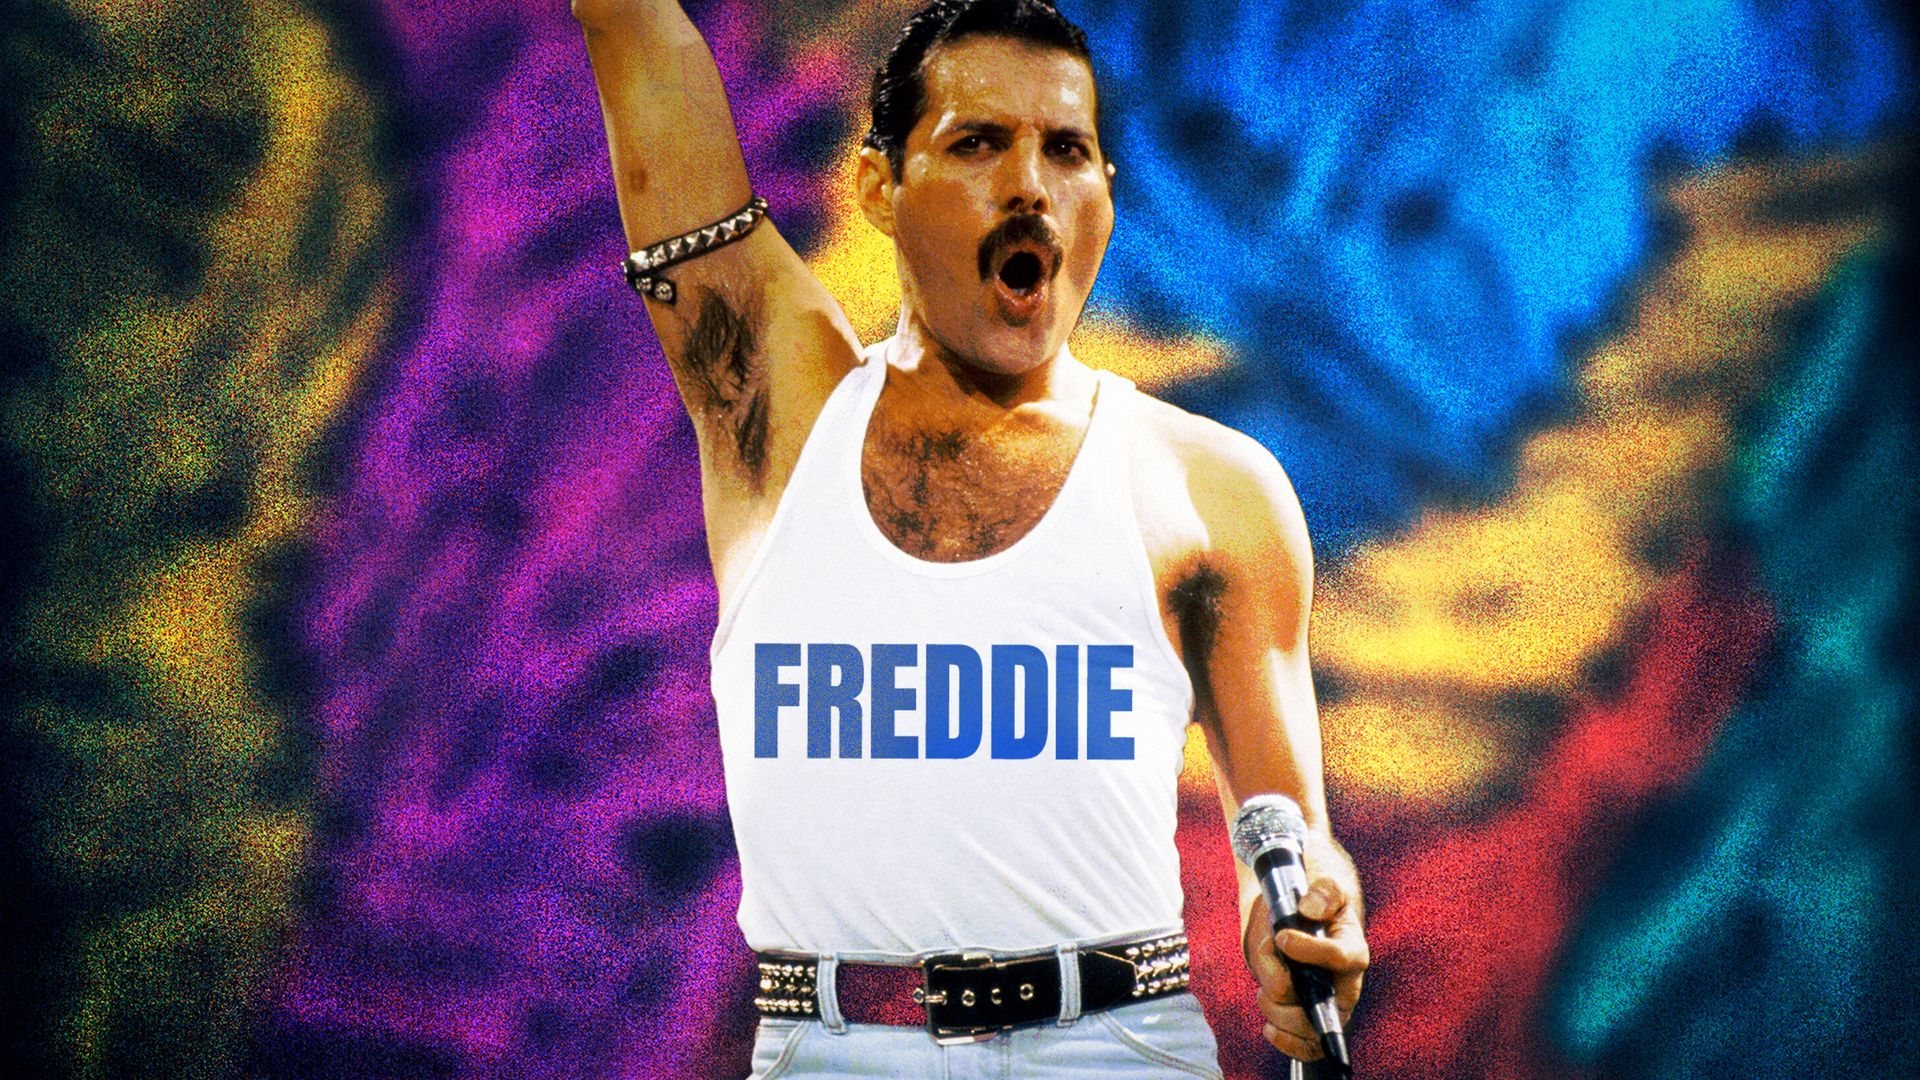 Freddie background